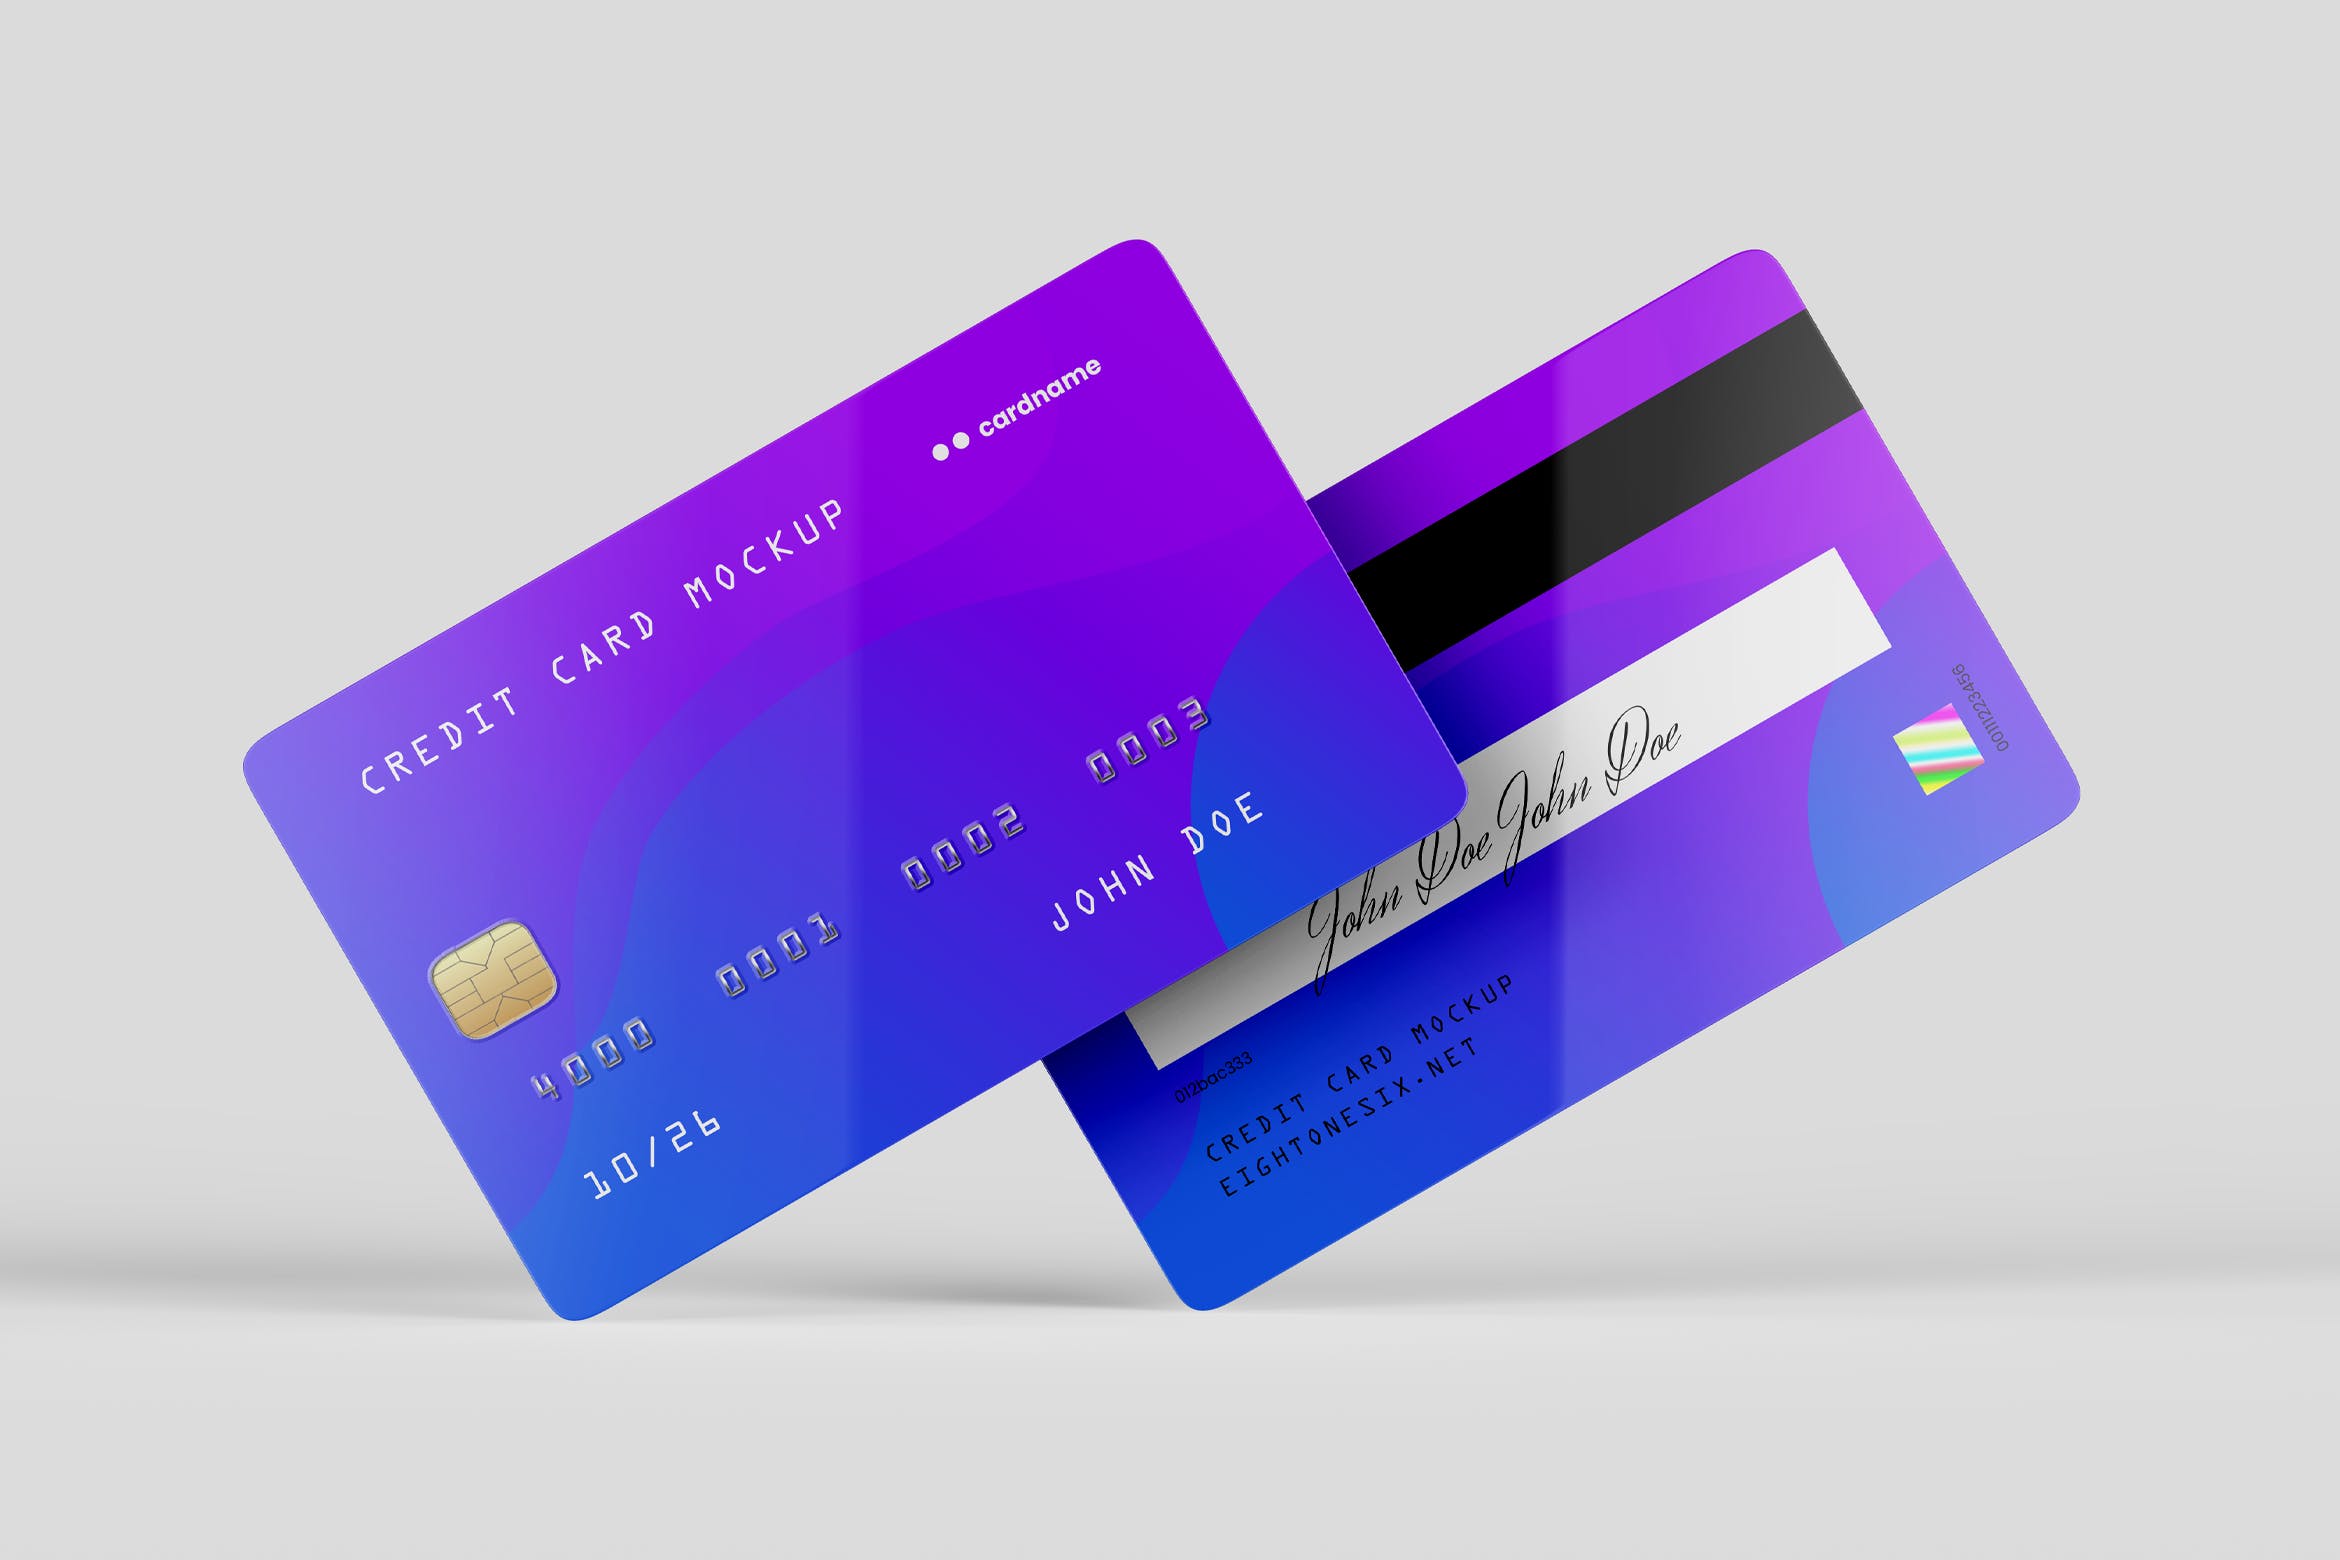 信用卡/银行卡/会员卡设计效果图样机非凡图库精选模板 Credit Card Mock-Up Template插图